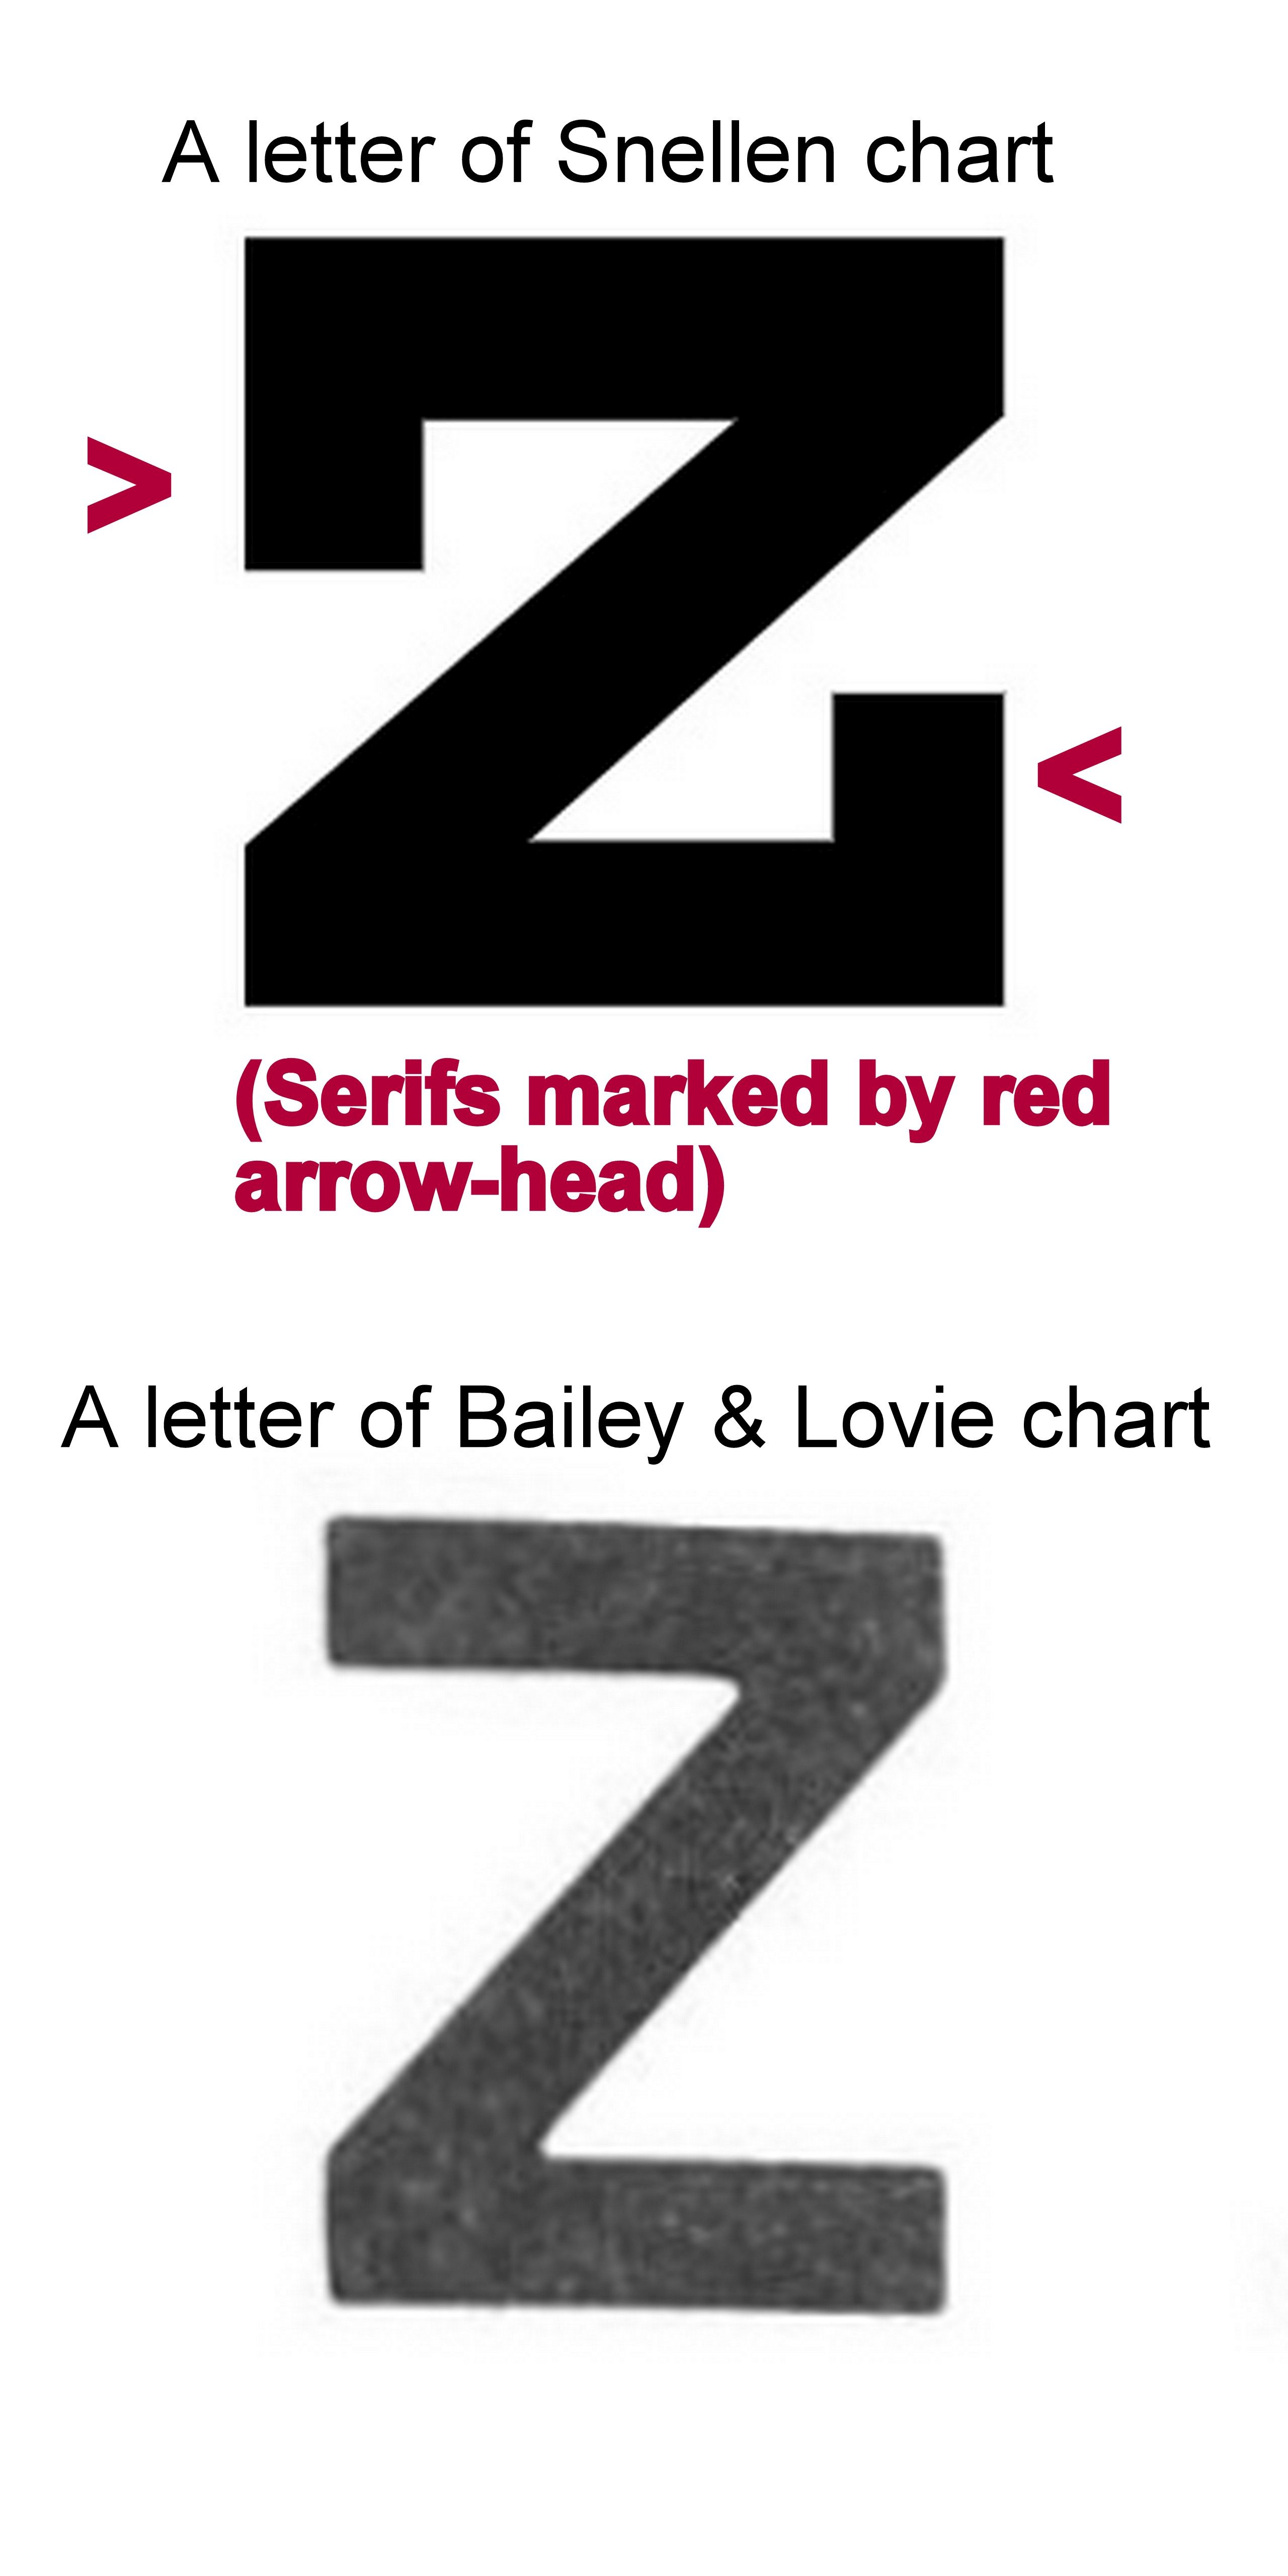 Serifs in Snellen chart